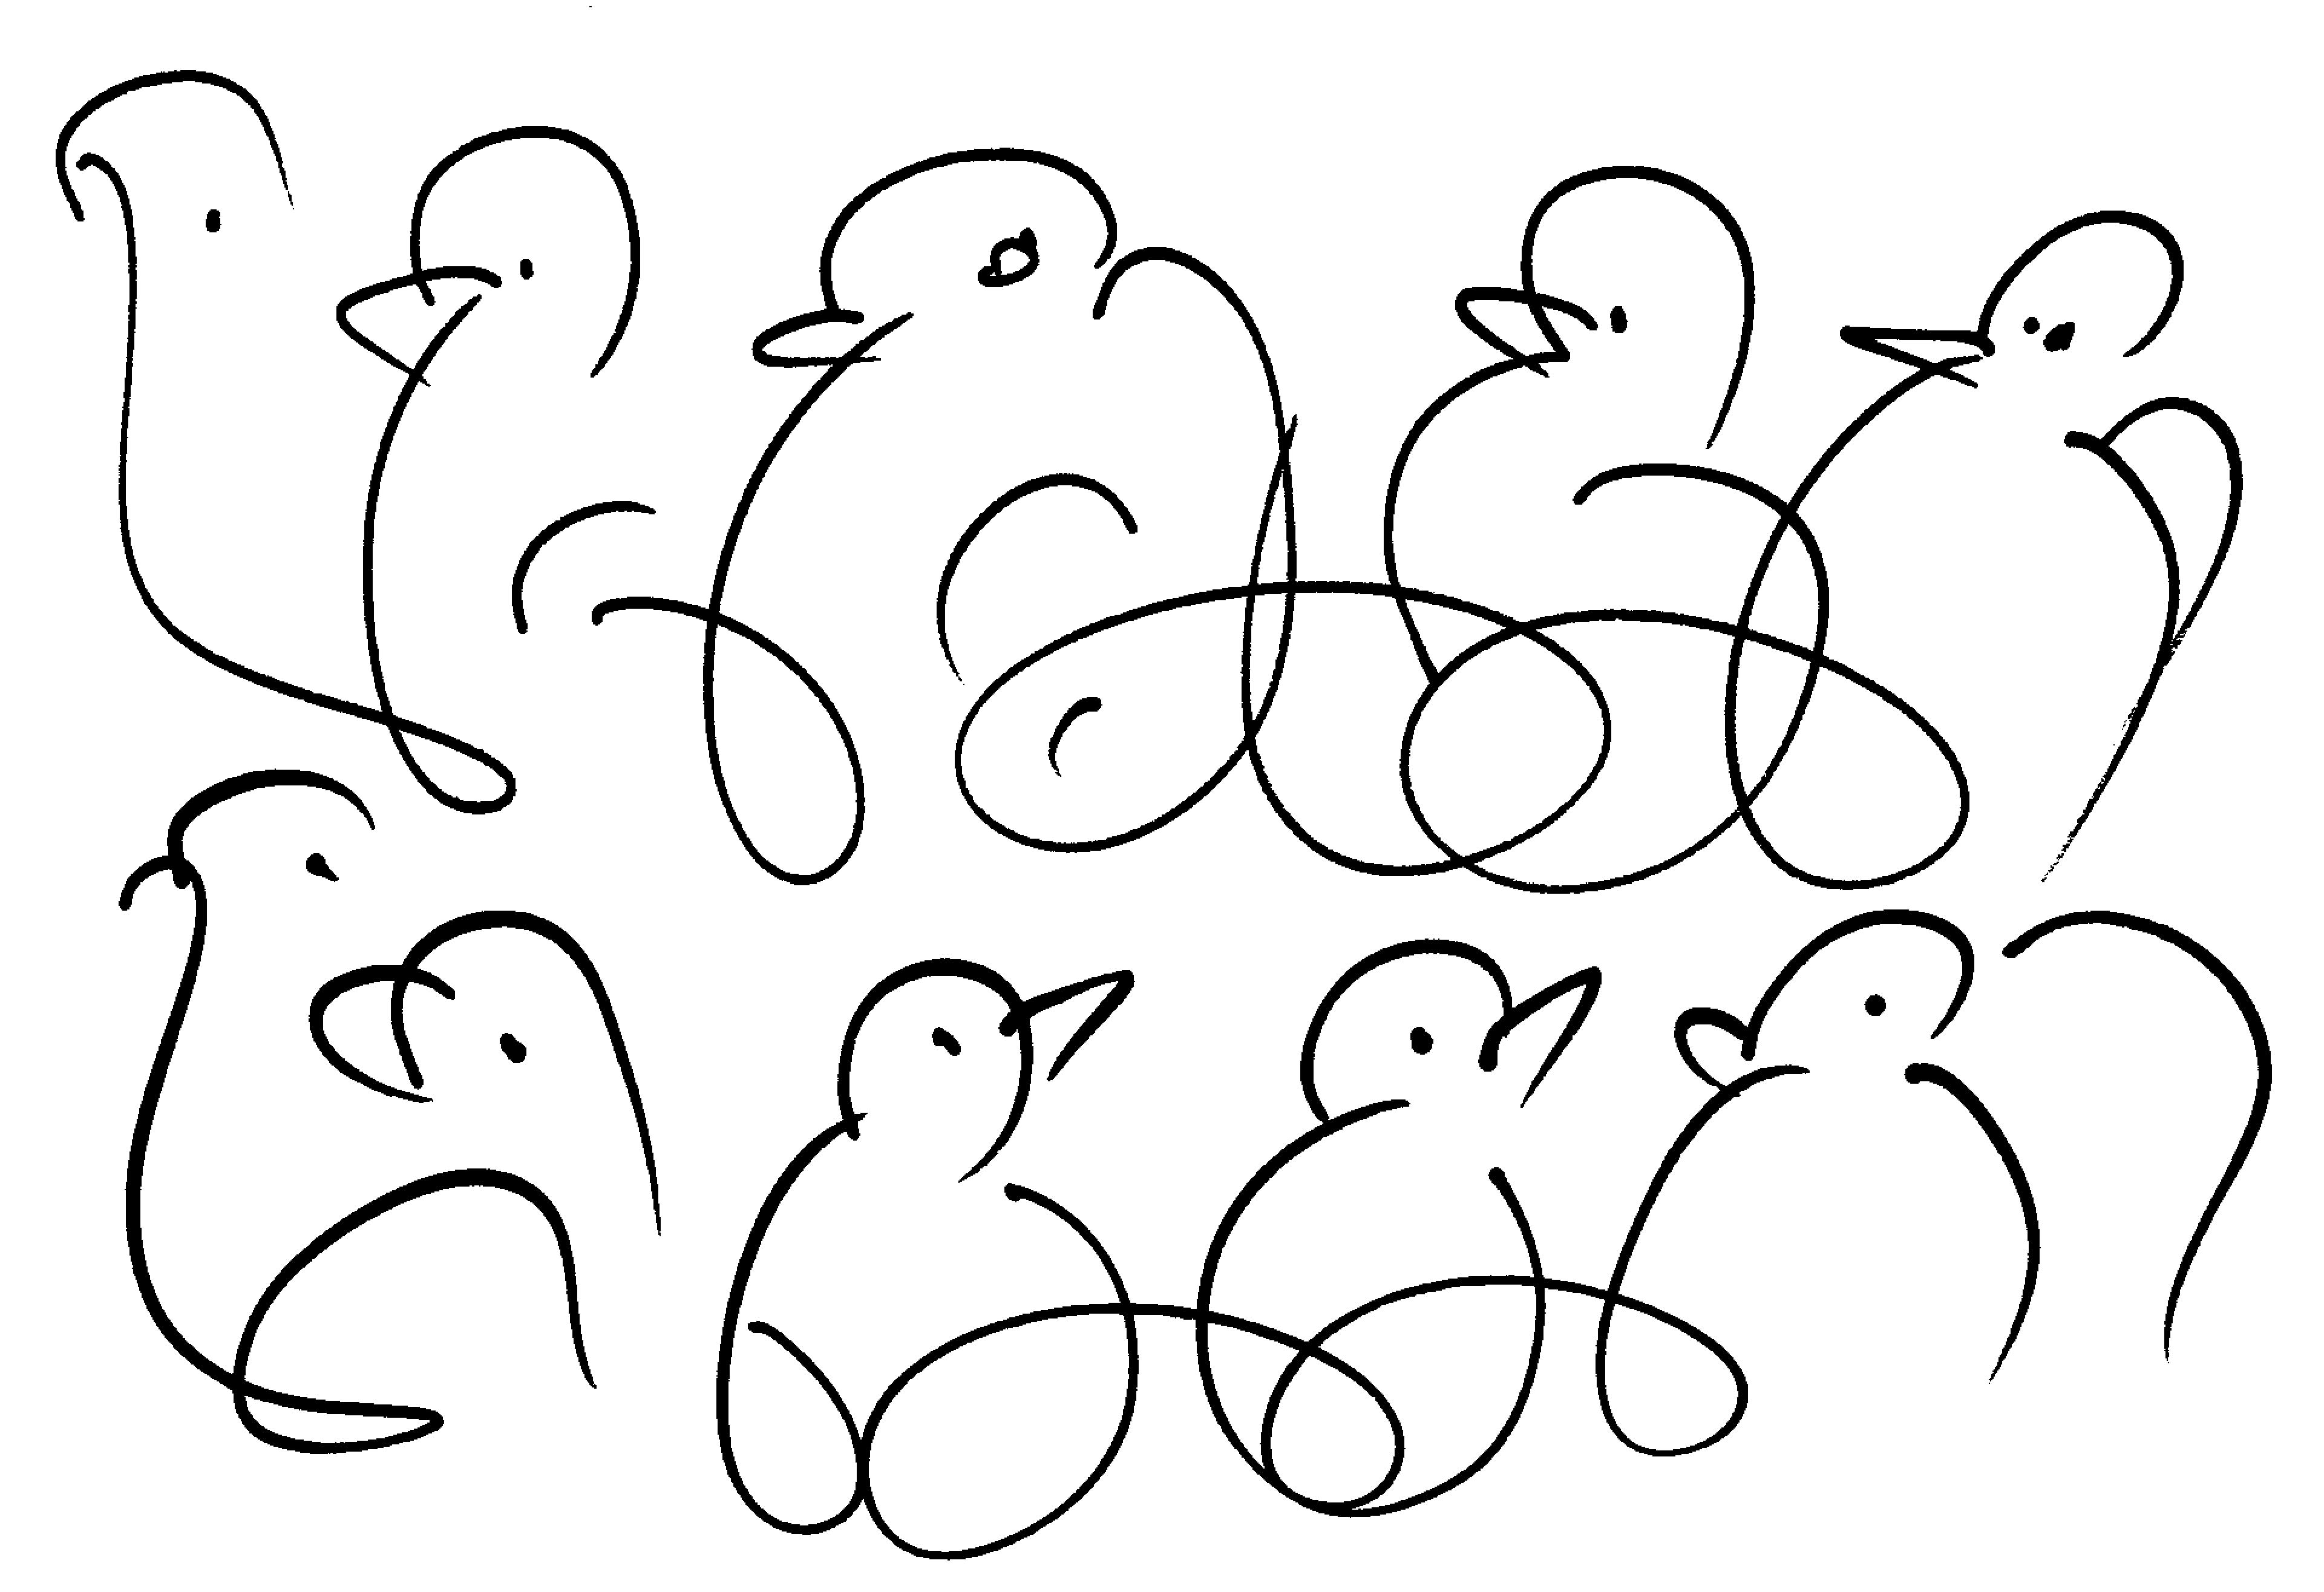 bird-drawing-by-sri-chinmoy-undated-390